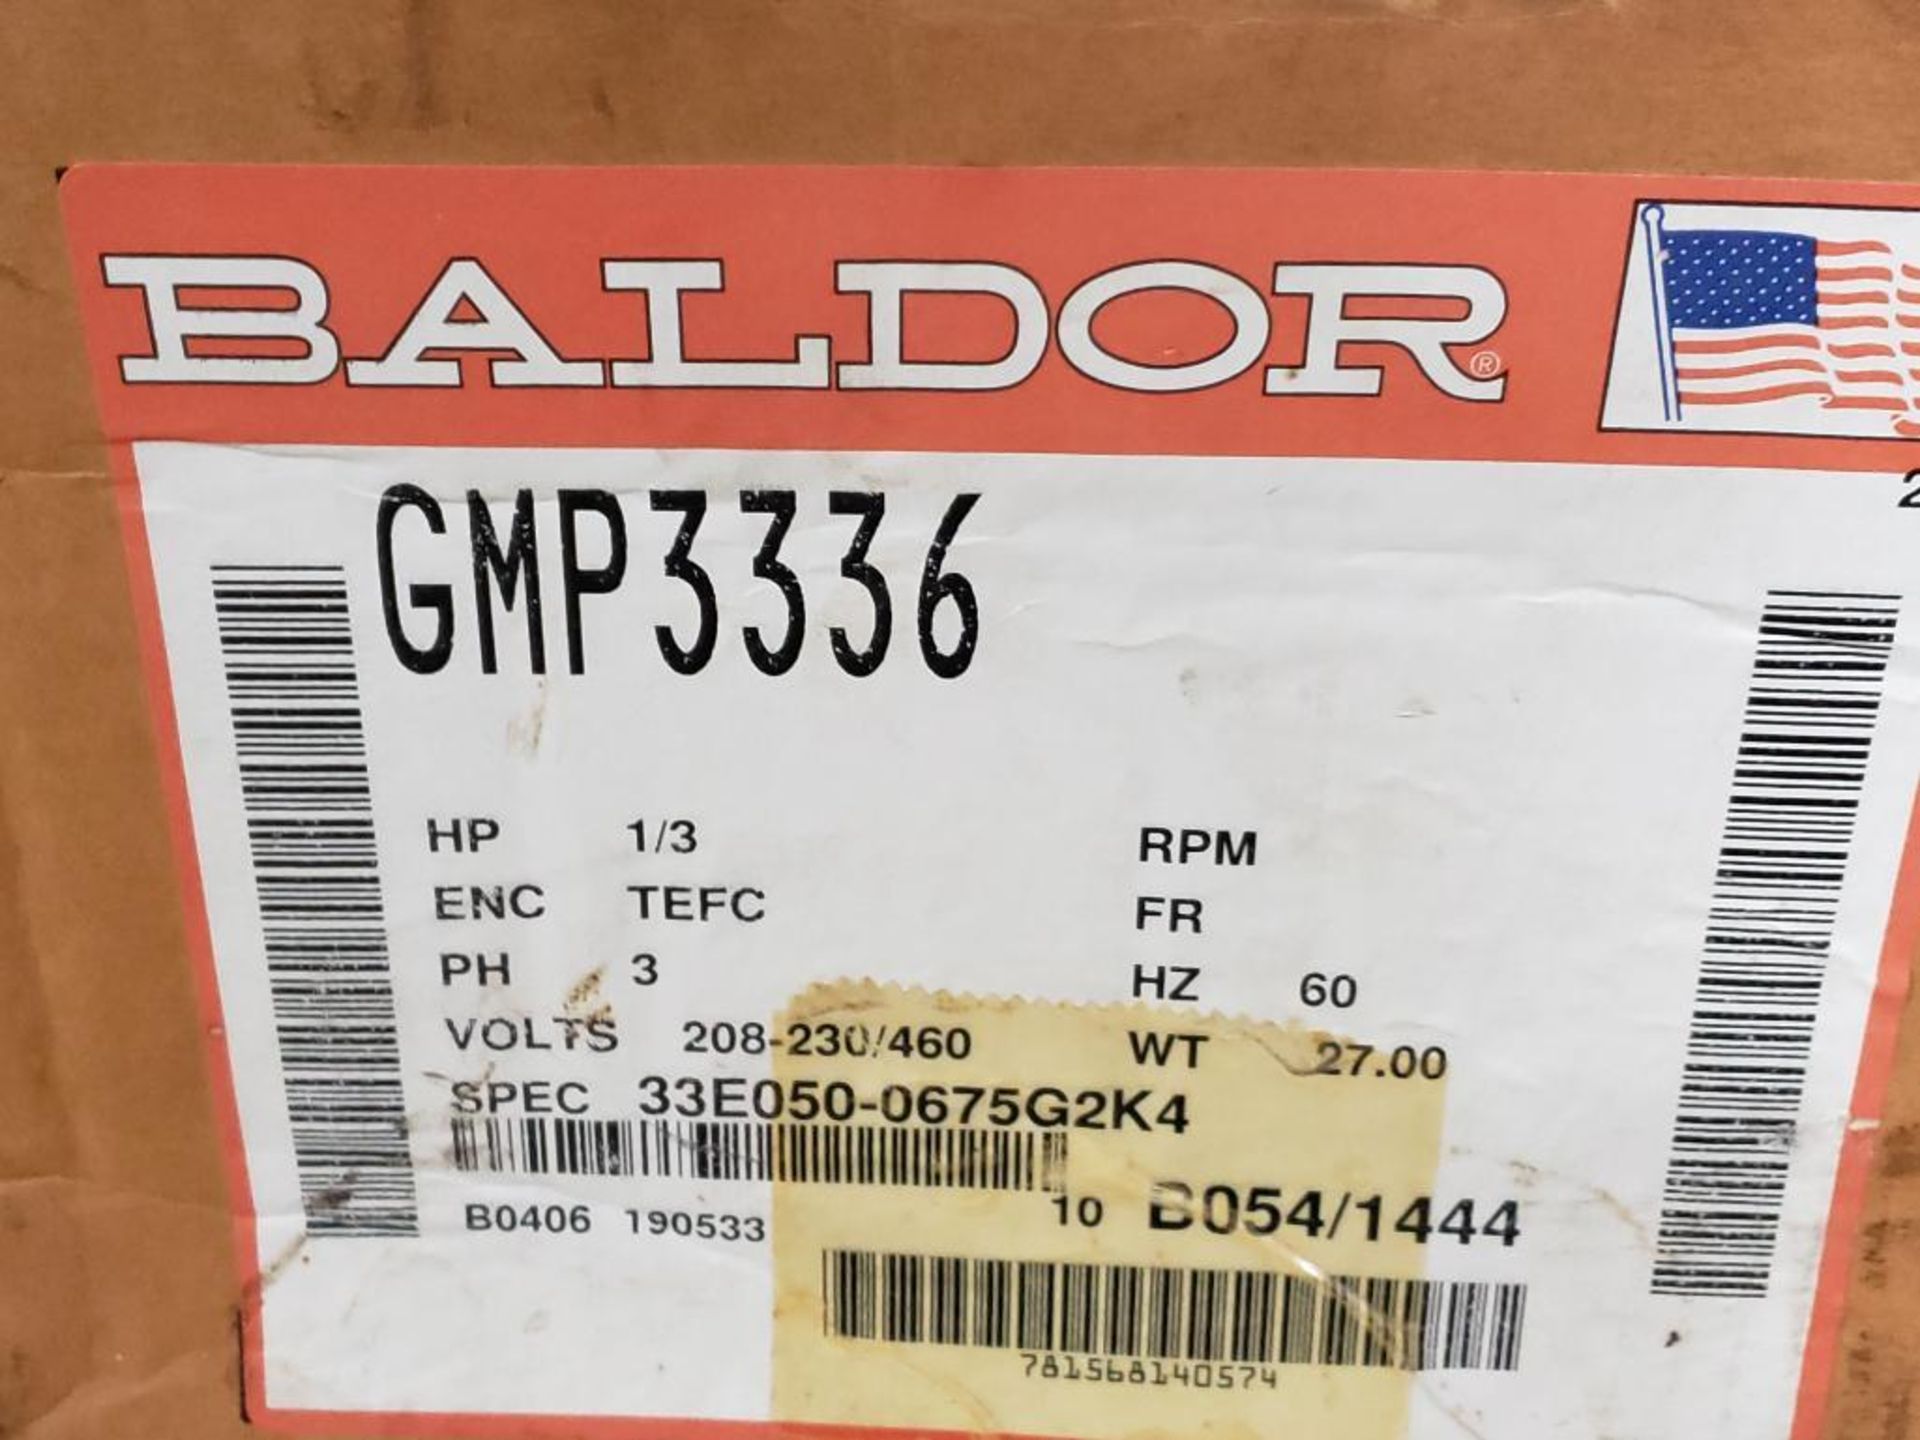 1/3HP Baldor GMP3336 motor. 208-230/460V, 3PH, 172.5RPM. - Image 3 of 6